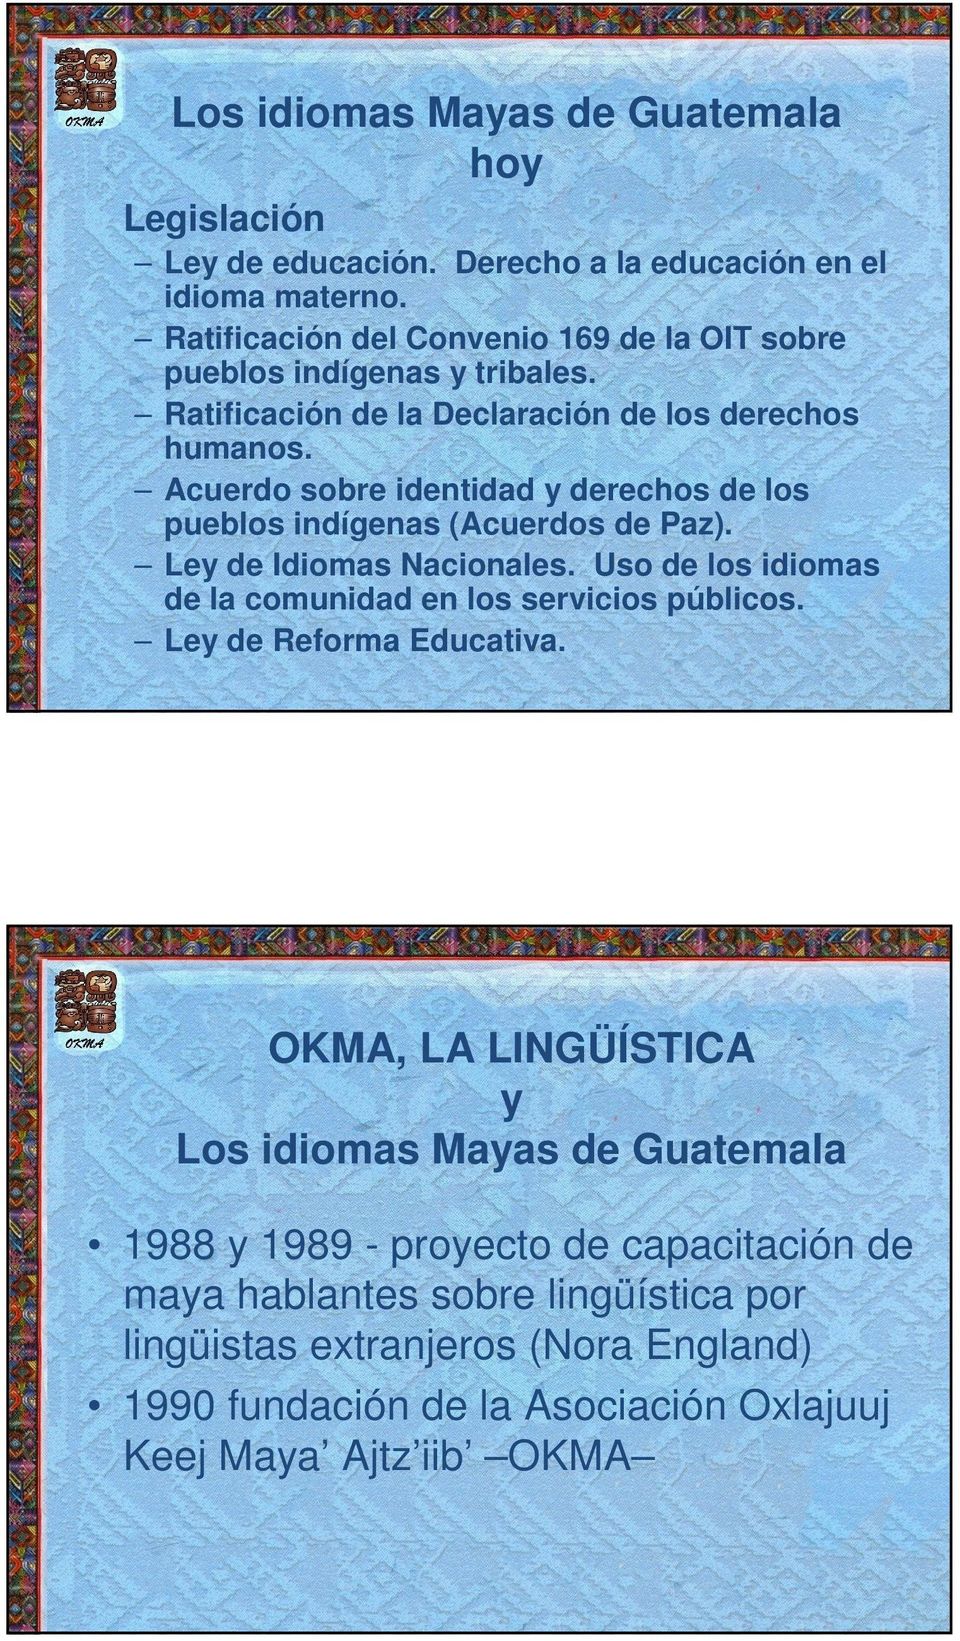 Acuerdo sobre identidad y derechos de los pueblos indígenas (Acuerdos de Paz). Ley de Idiomas Nacionales. Uso de los idiomas de la comunidad en los servicios públicos.